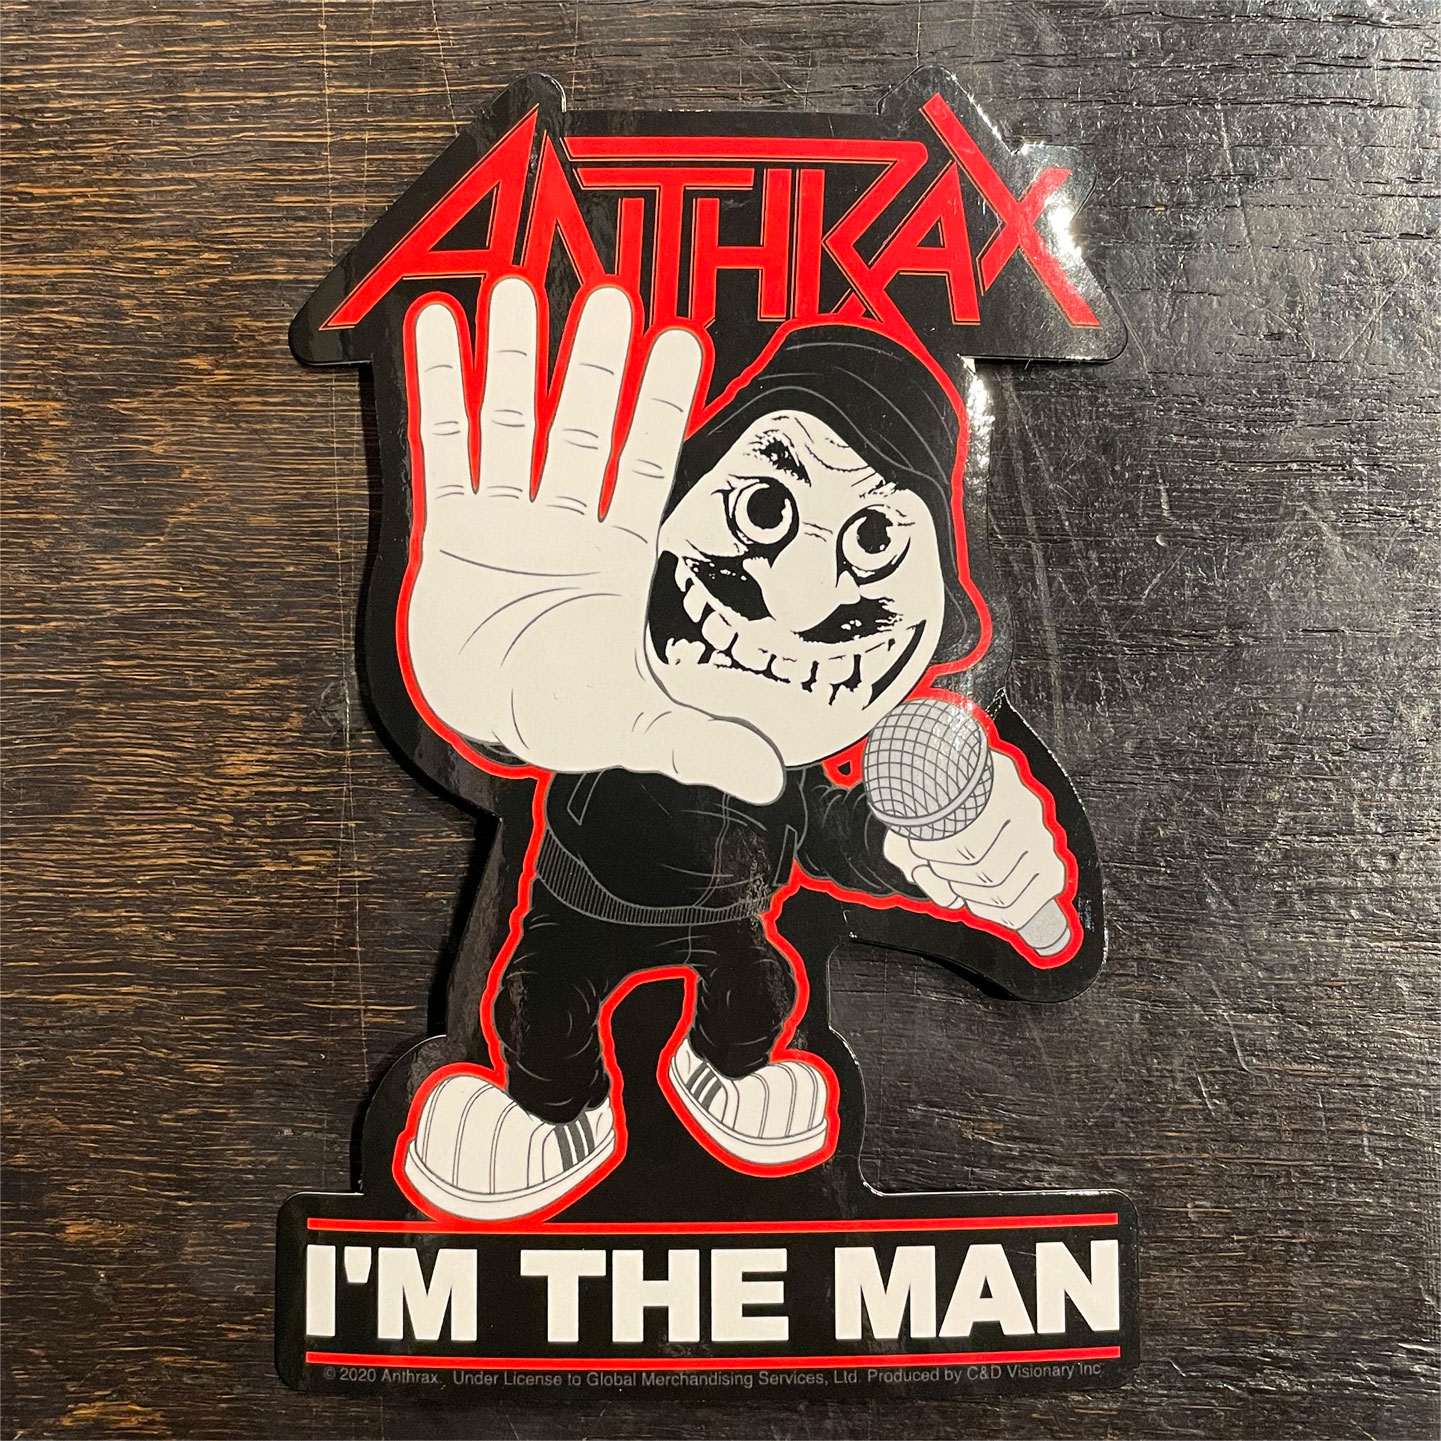 ANTHRAX ステッカー I'M THE MAN